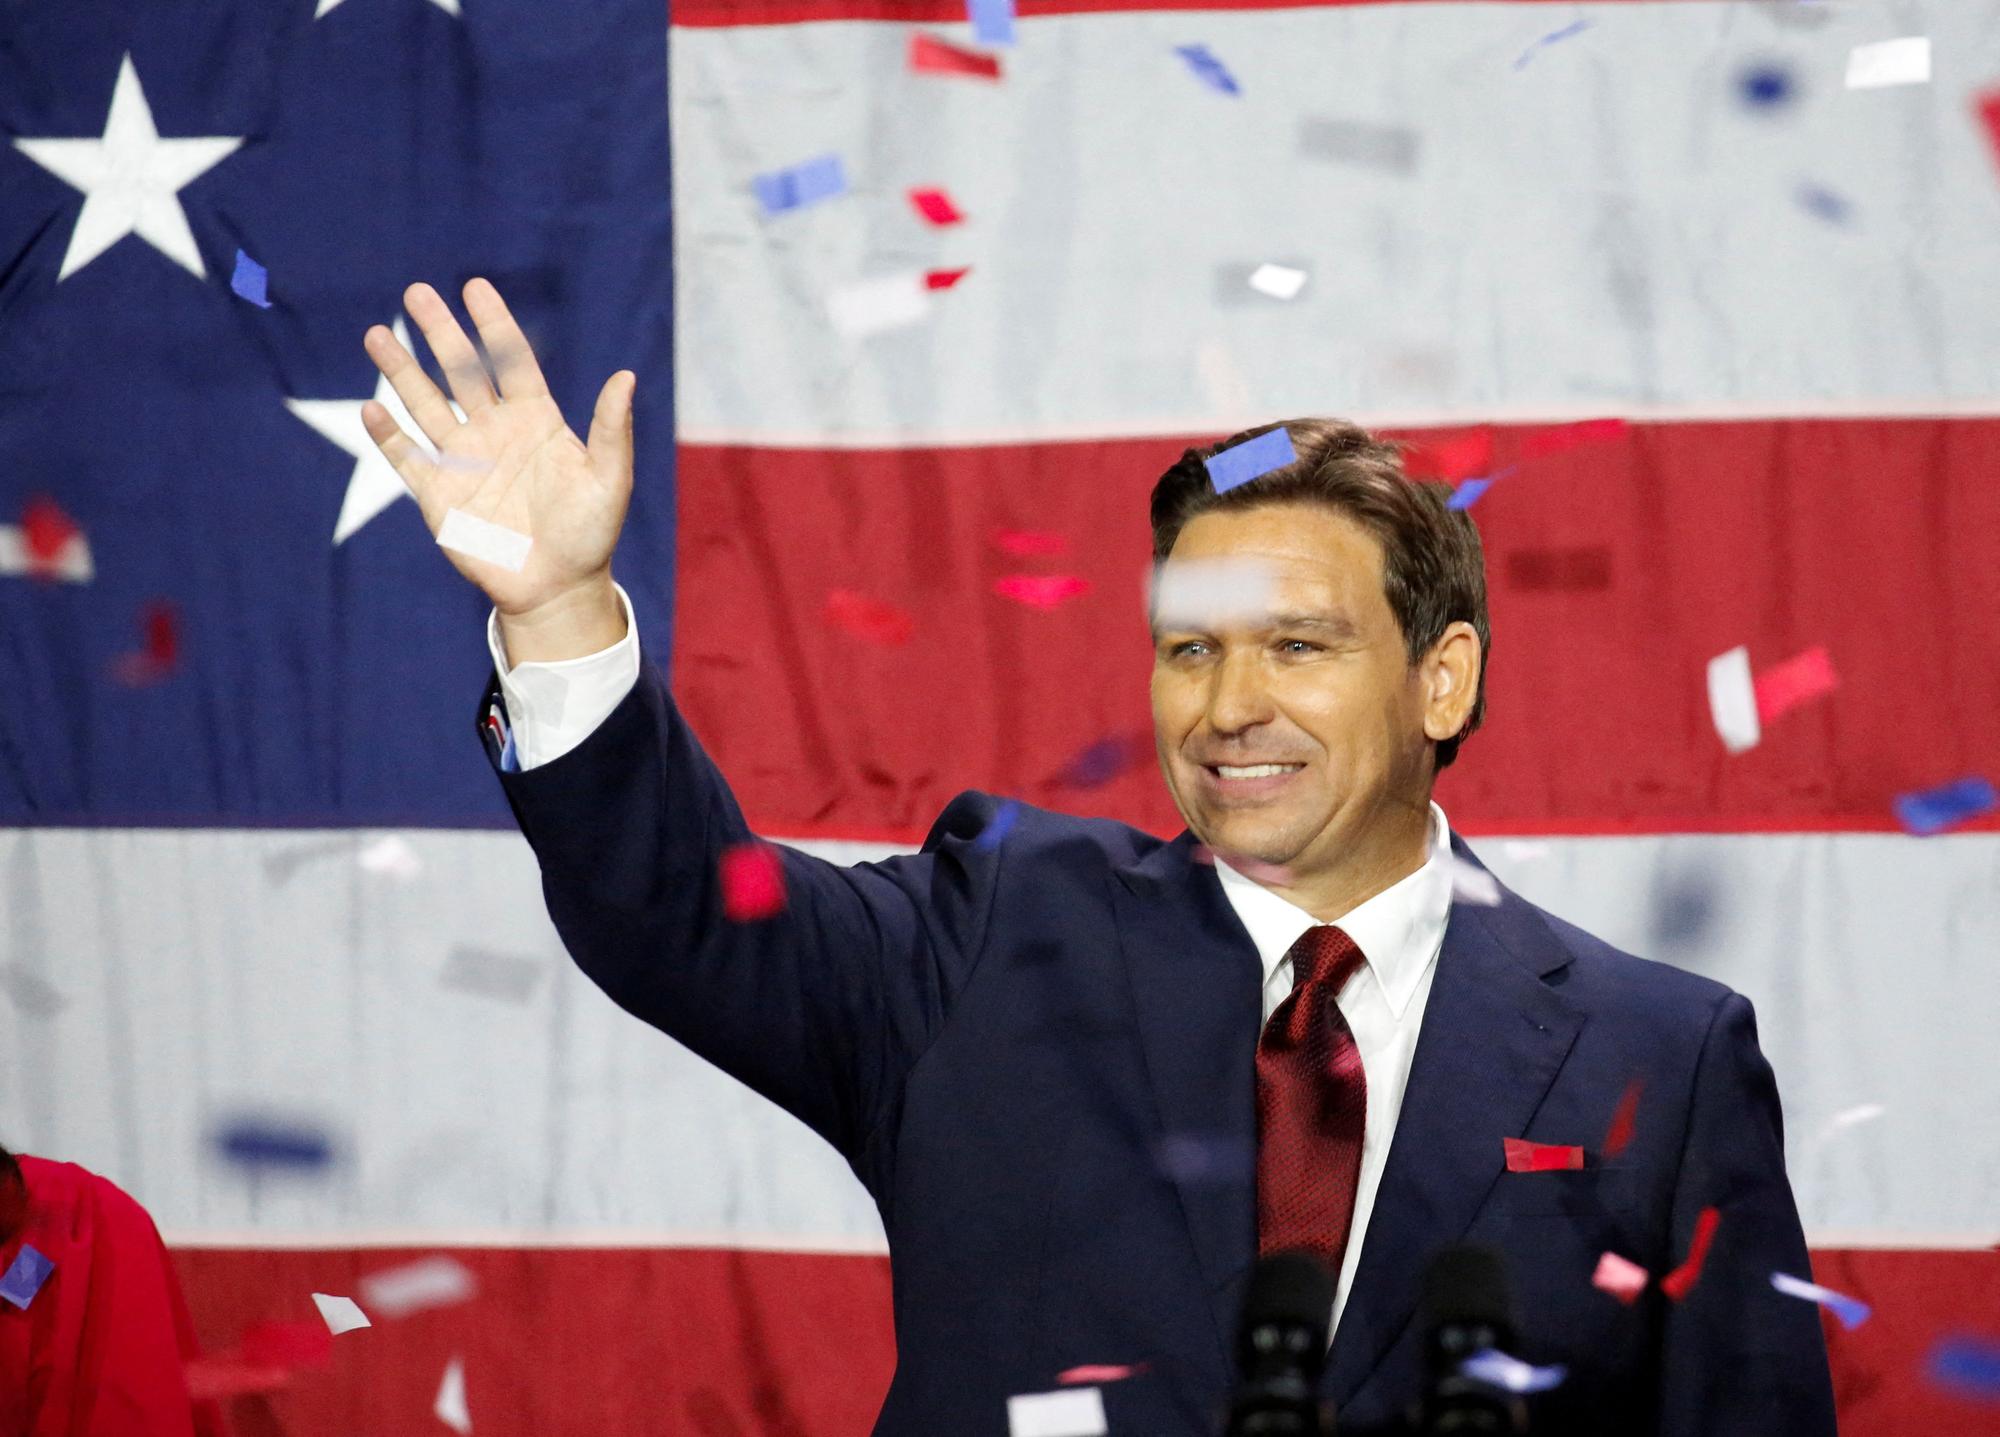 Réélu avec près de 60% des voix, le gouverneur de Floride Ron DeSantis se profile comme rival sérieux de Donald Trump au sein du Parti républicain lors d'une primaire en vue de la présidentielle de 2024. [REUTERS - Marco Bello]